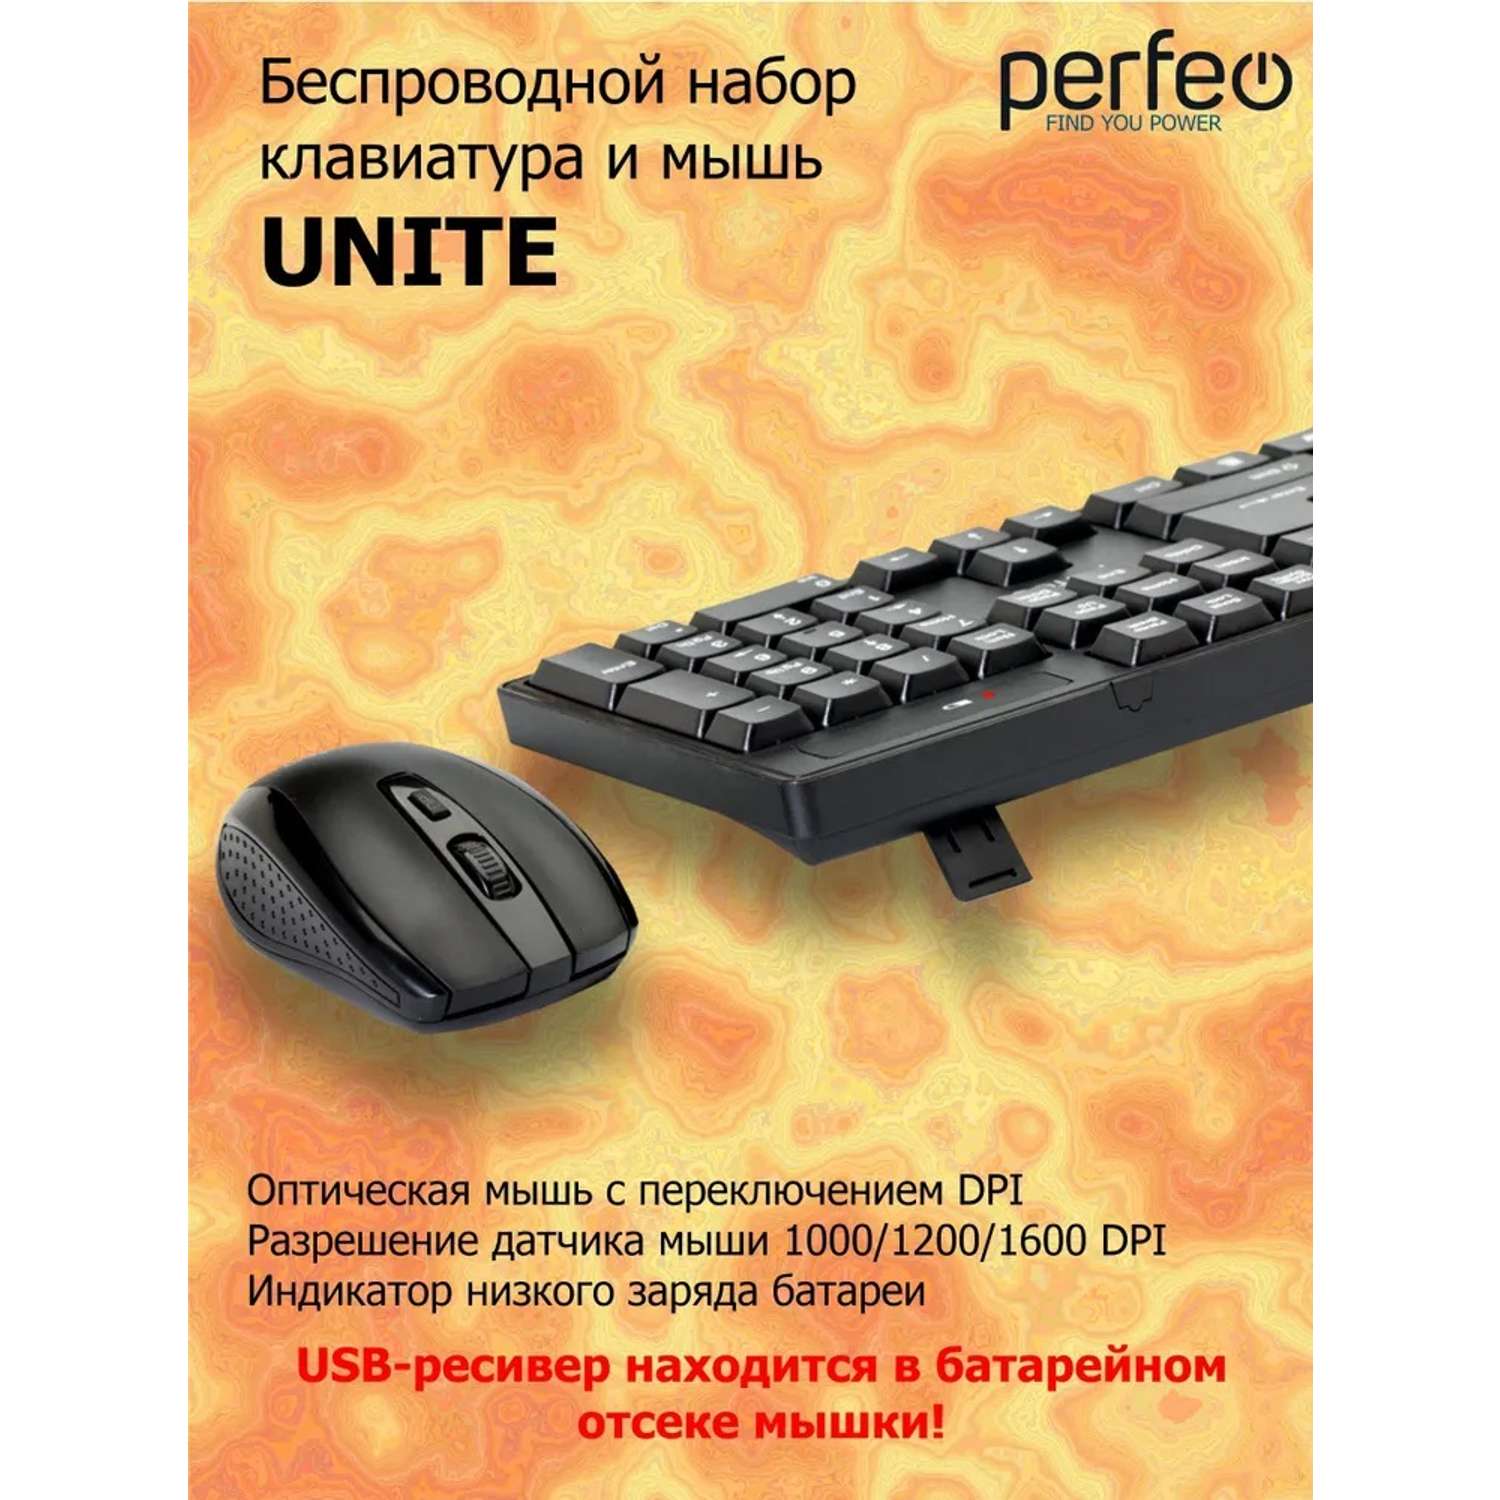 Беспроводная клавиатура и мышь Perfeo UNITE USB - фото 2